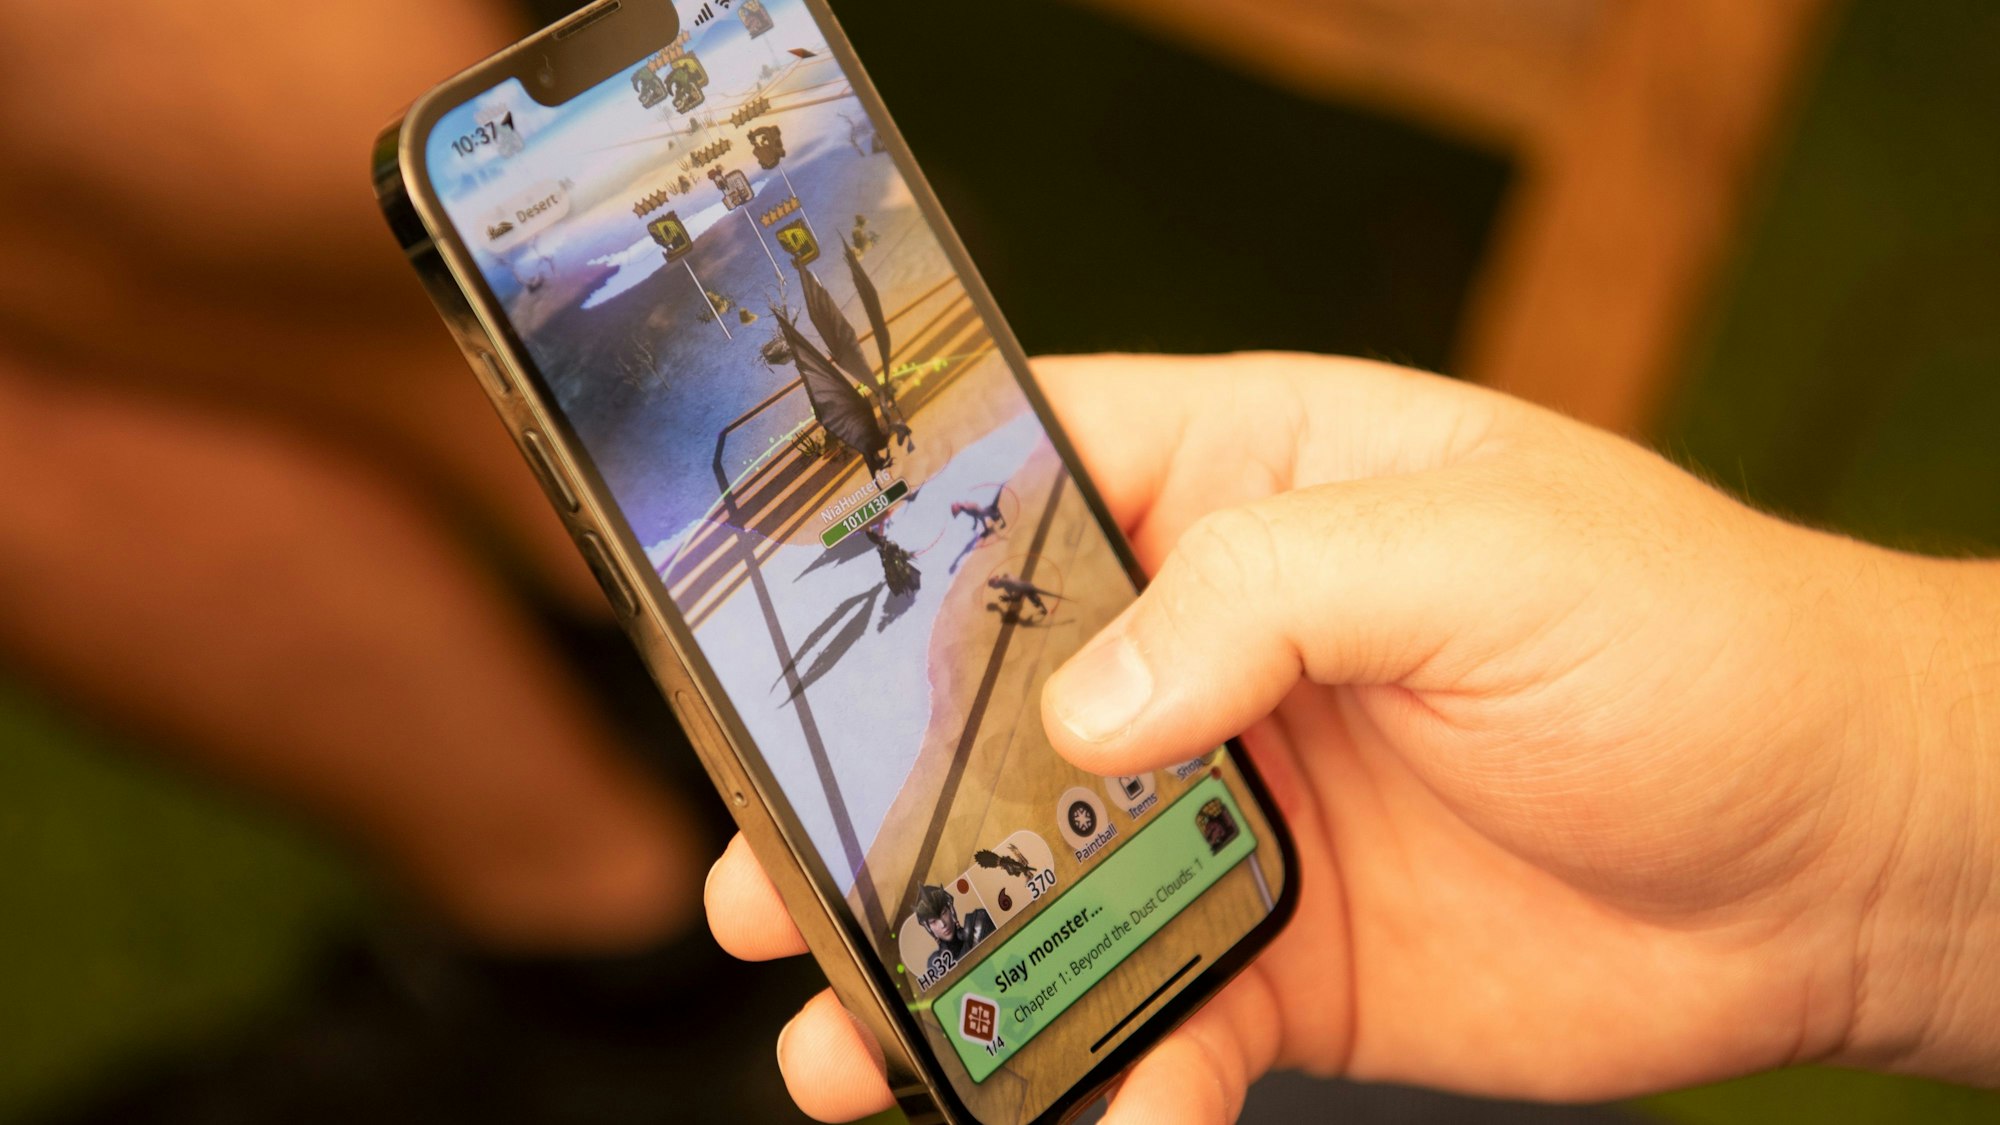 Ein Computerspiel wird auf dem Bildschirm eines Smarrtphones angezeigt.